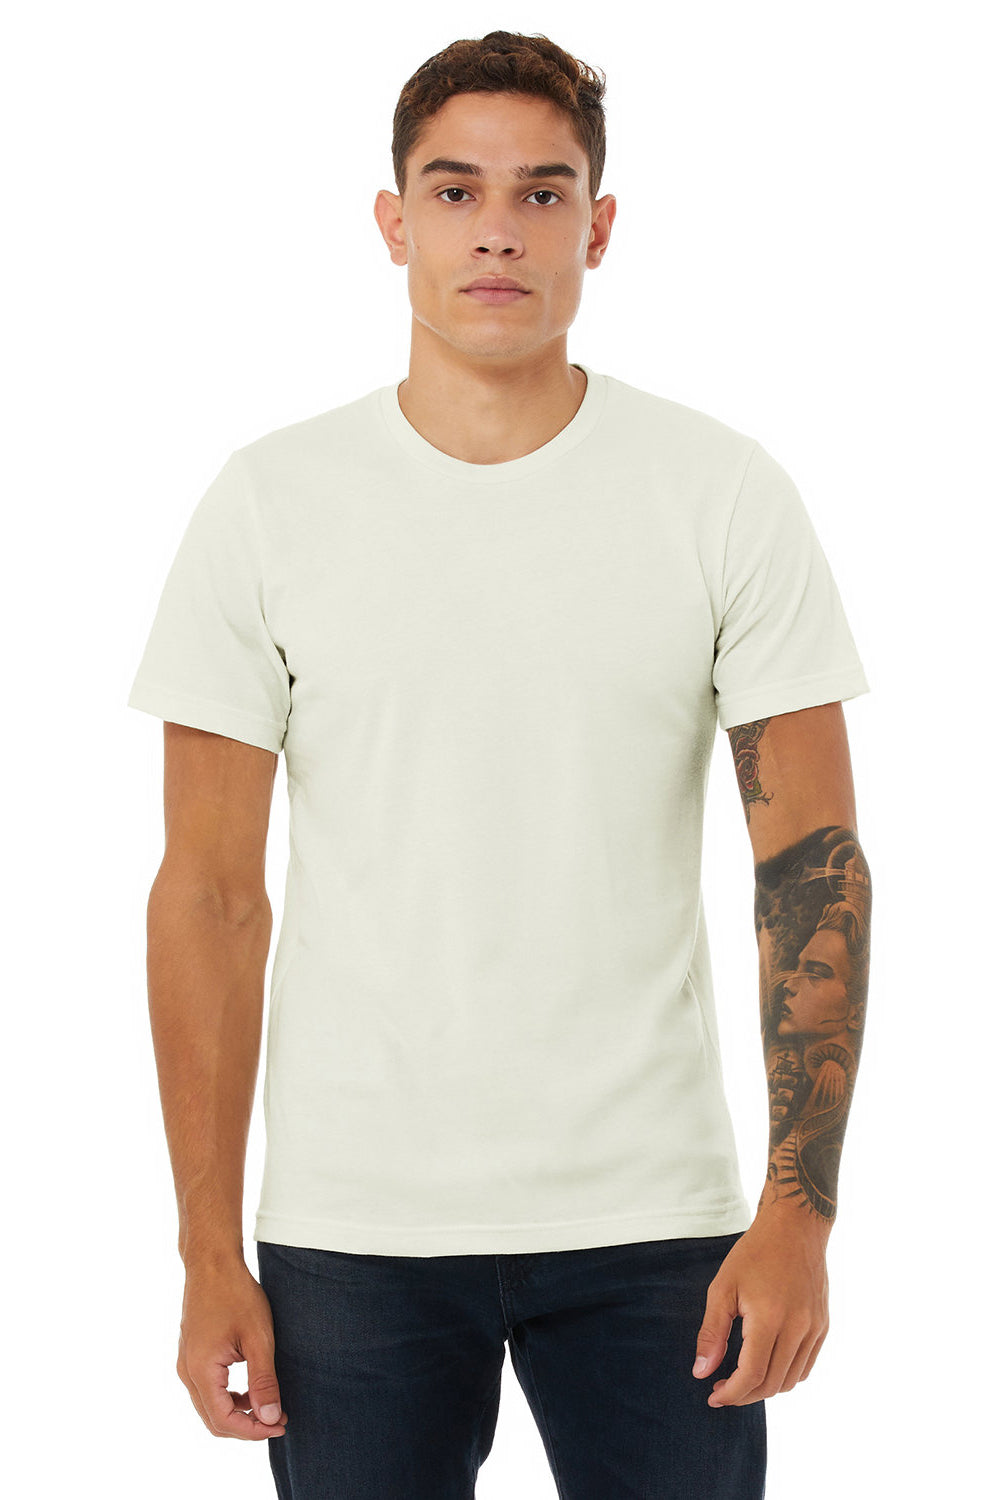 Bella + Canvas BC3001/3001C Mens Jersey Short Sleeve Crewneck T-Shirt Citron Model Front